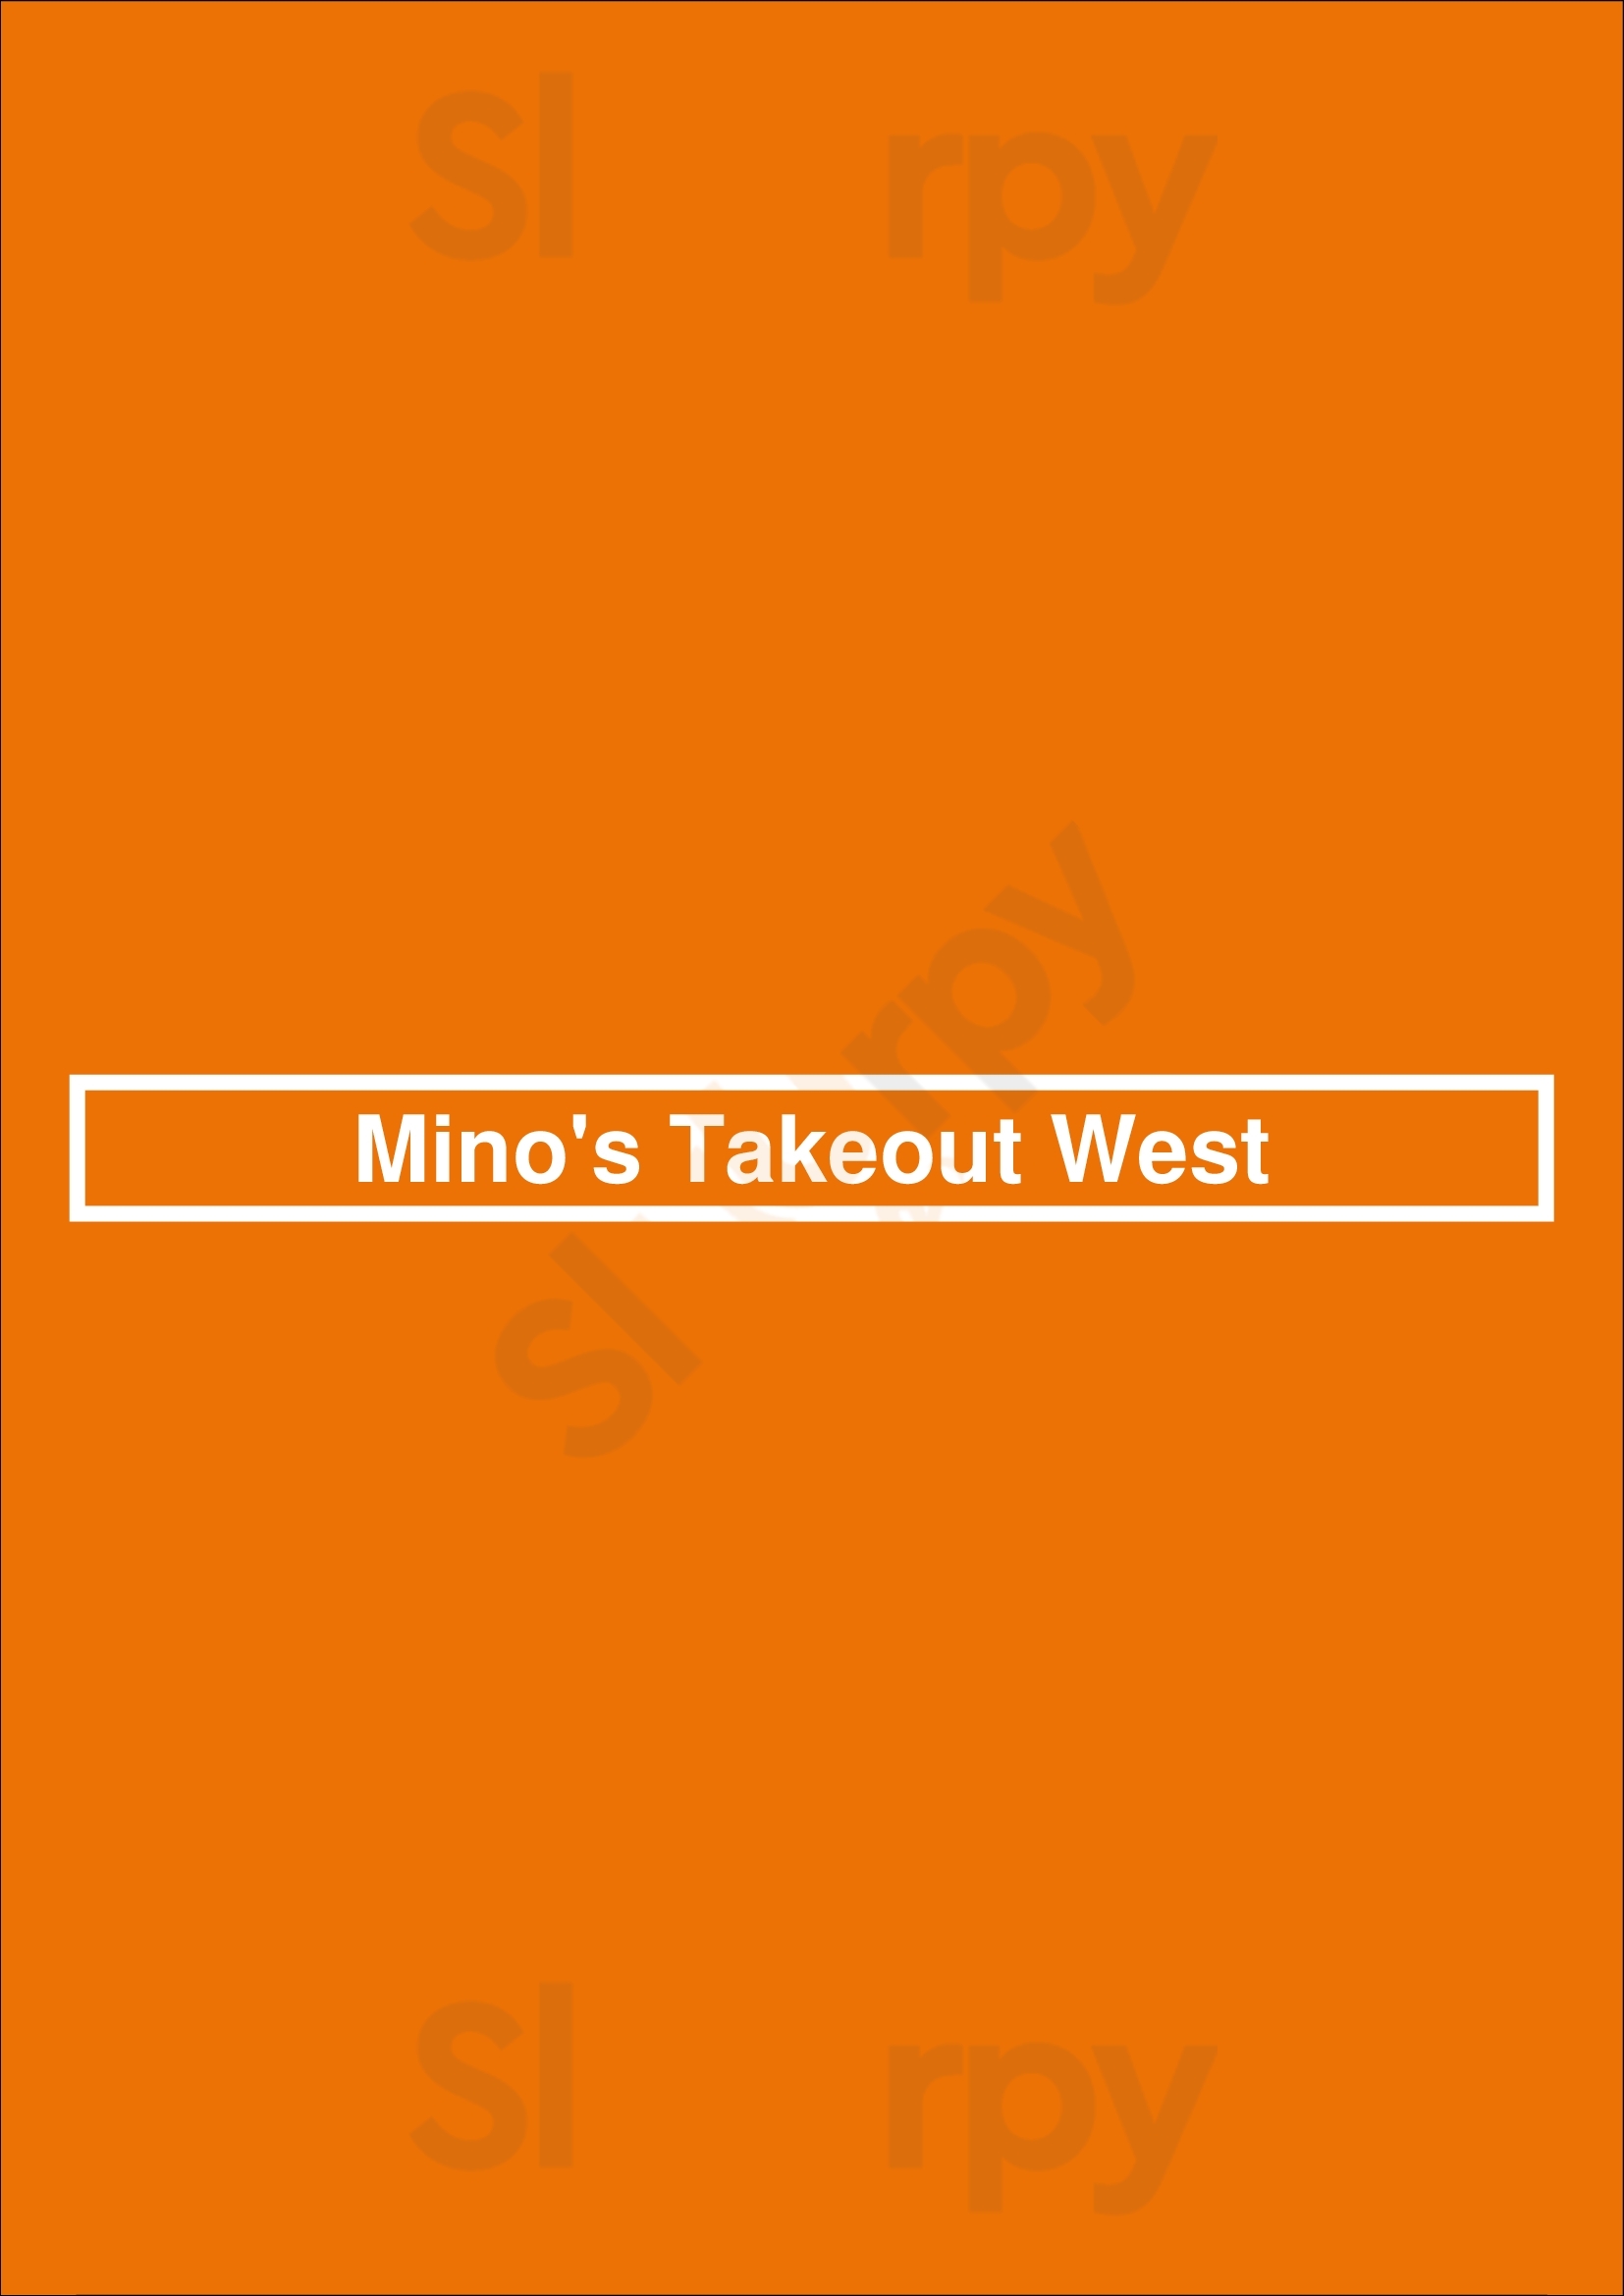 Mino's Takeout West Kingston Menu - 1